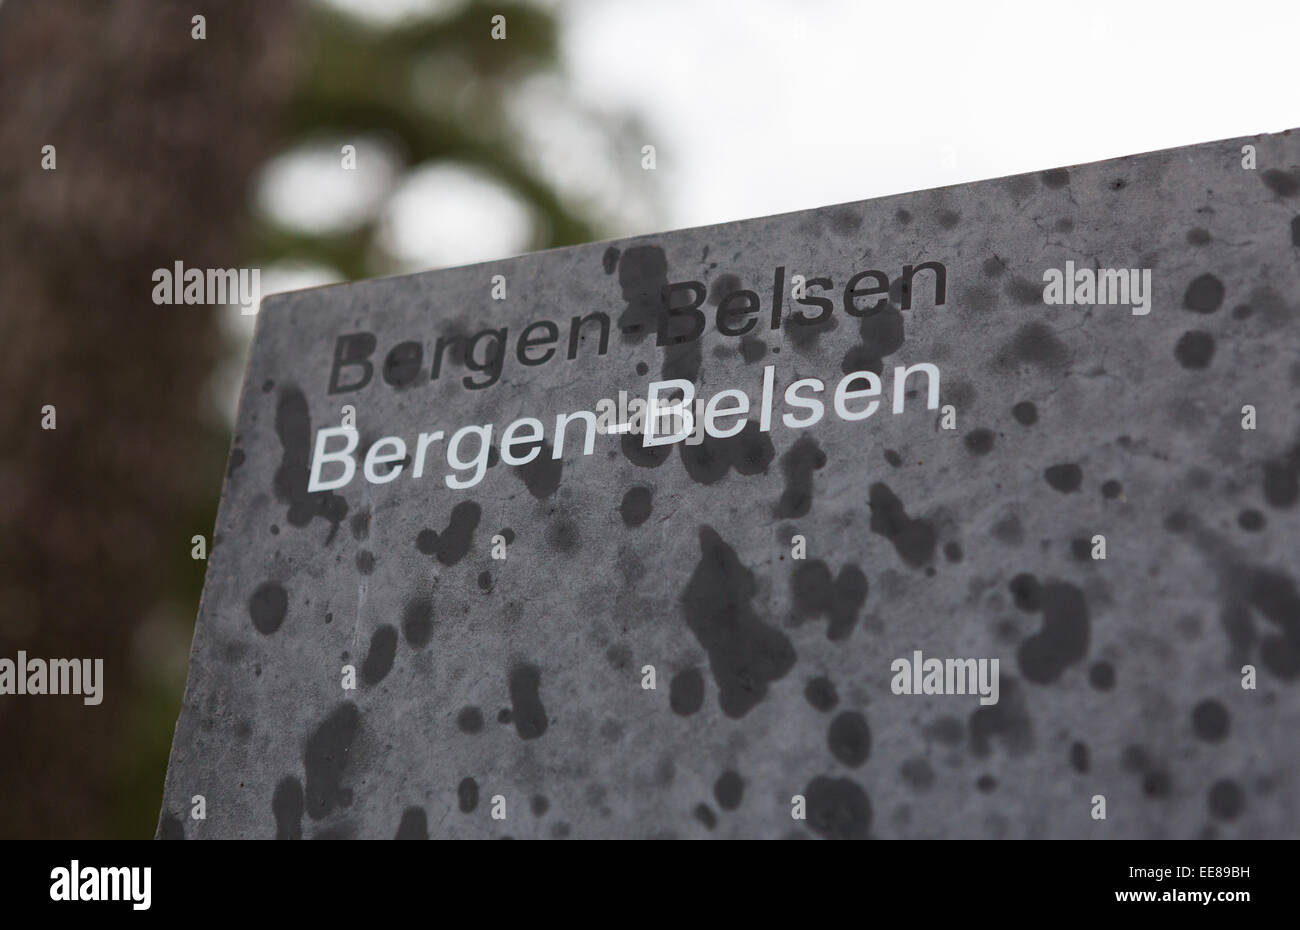 Sign at the site of Bergen-Belsen Concentration and Prisoner of War POW Camp, Bergen-Belsen, Germany Stock Photo